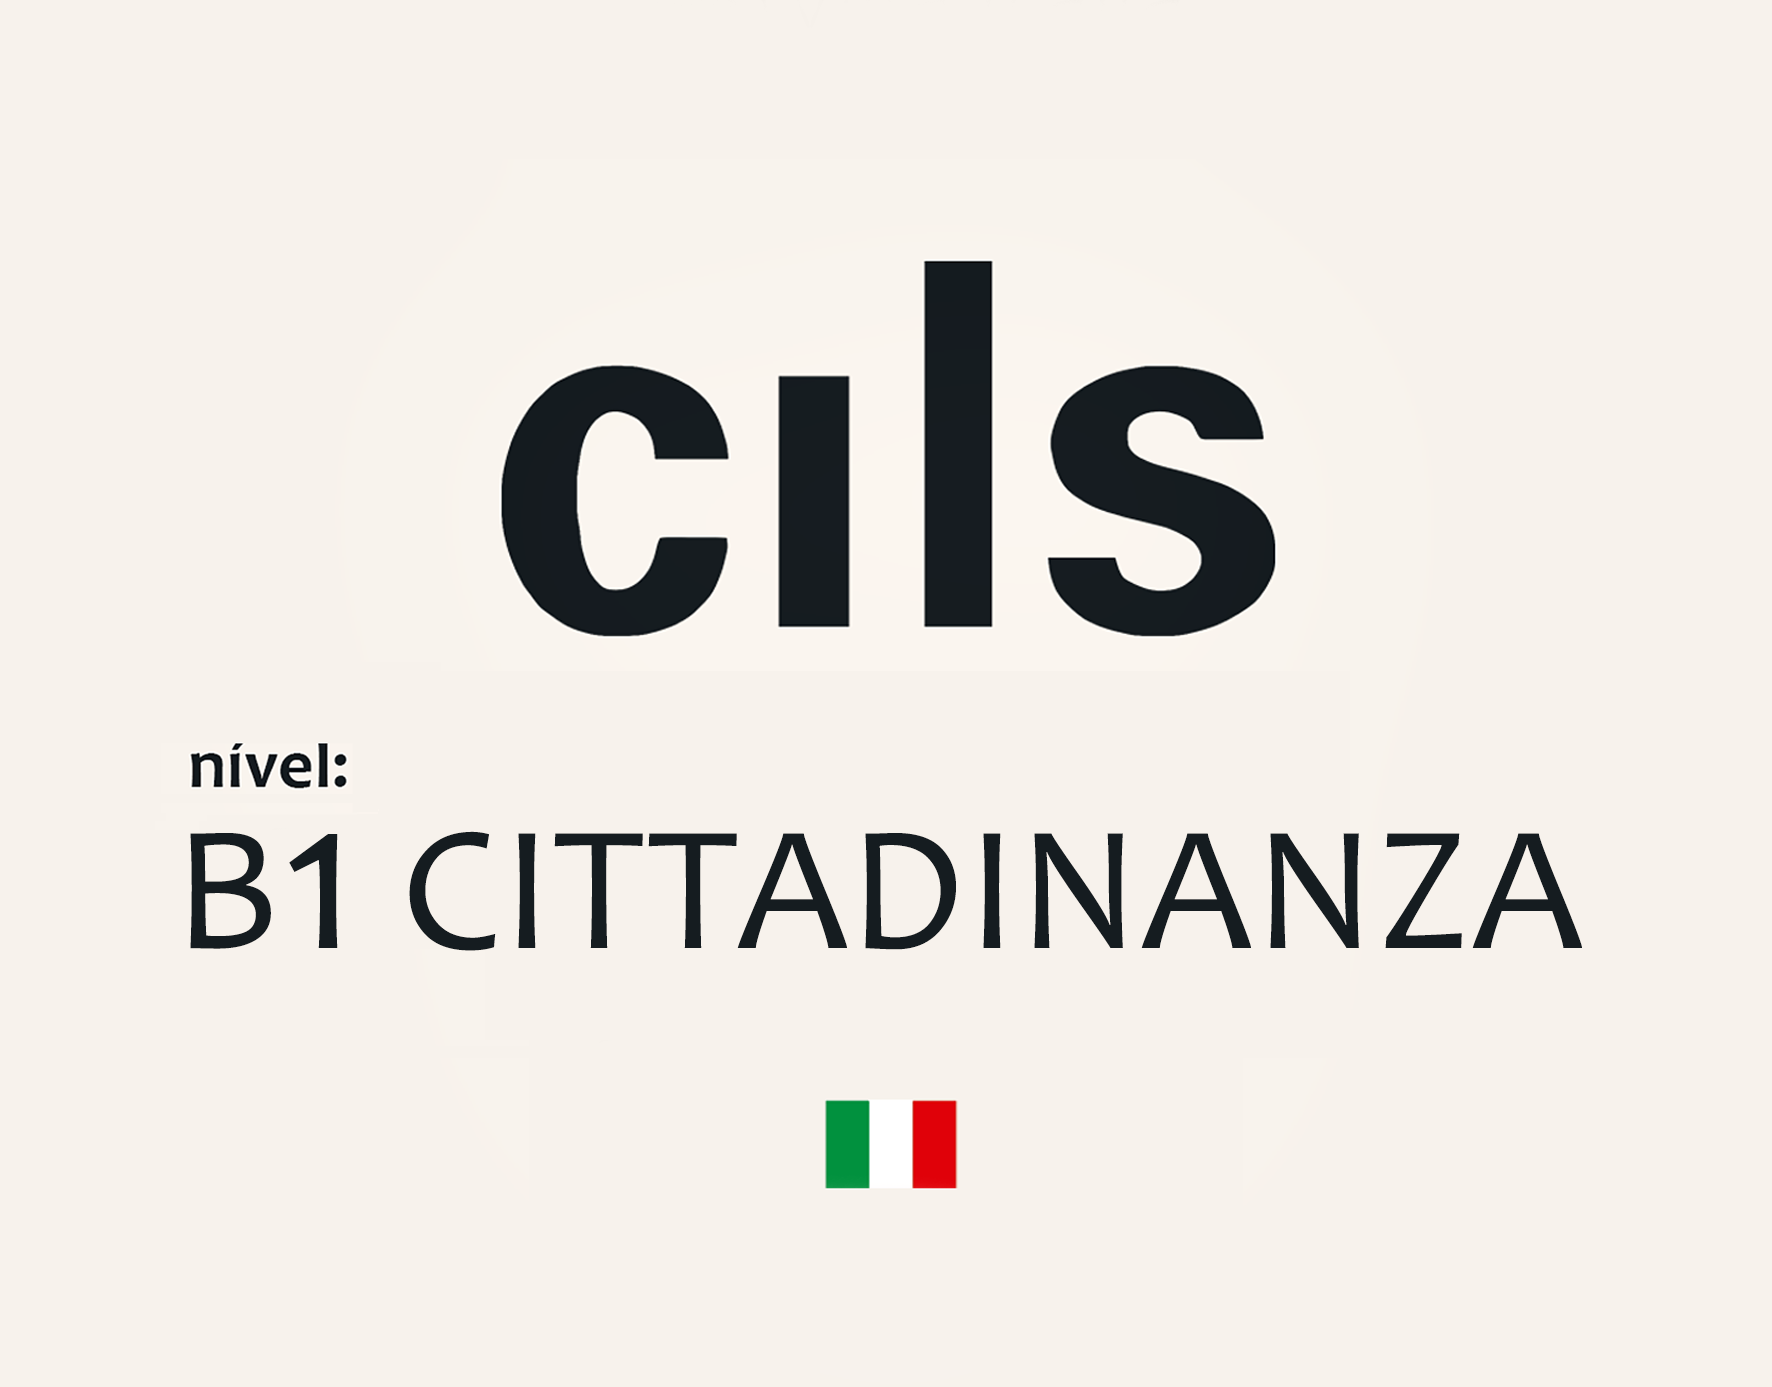 PROVA CILS - B1 Cittadinanza